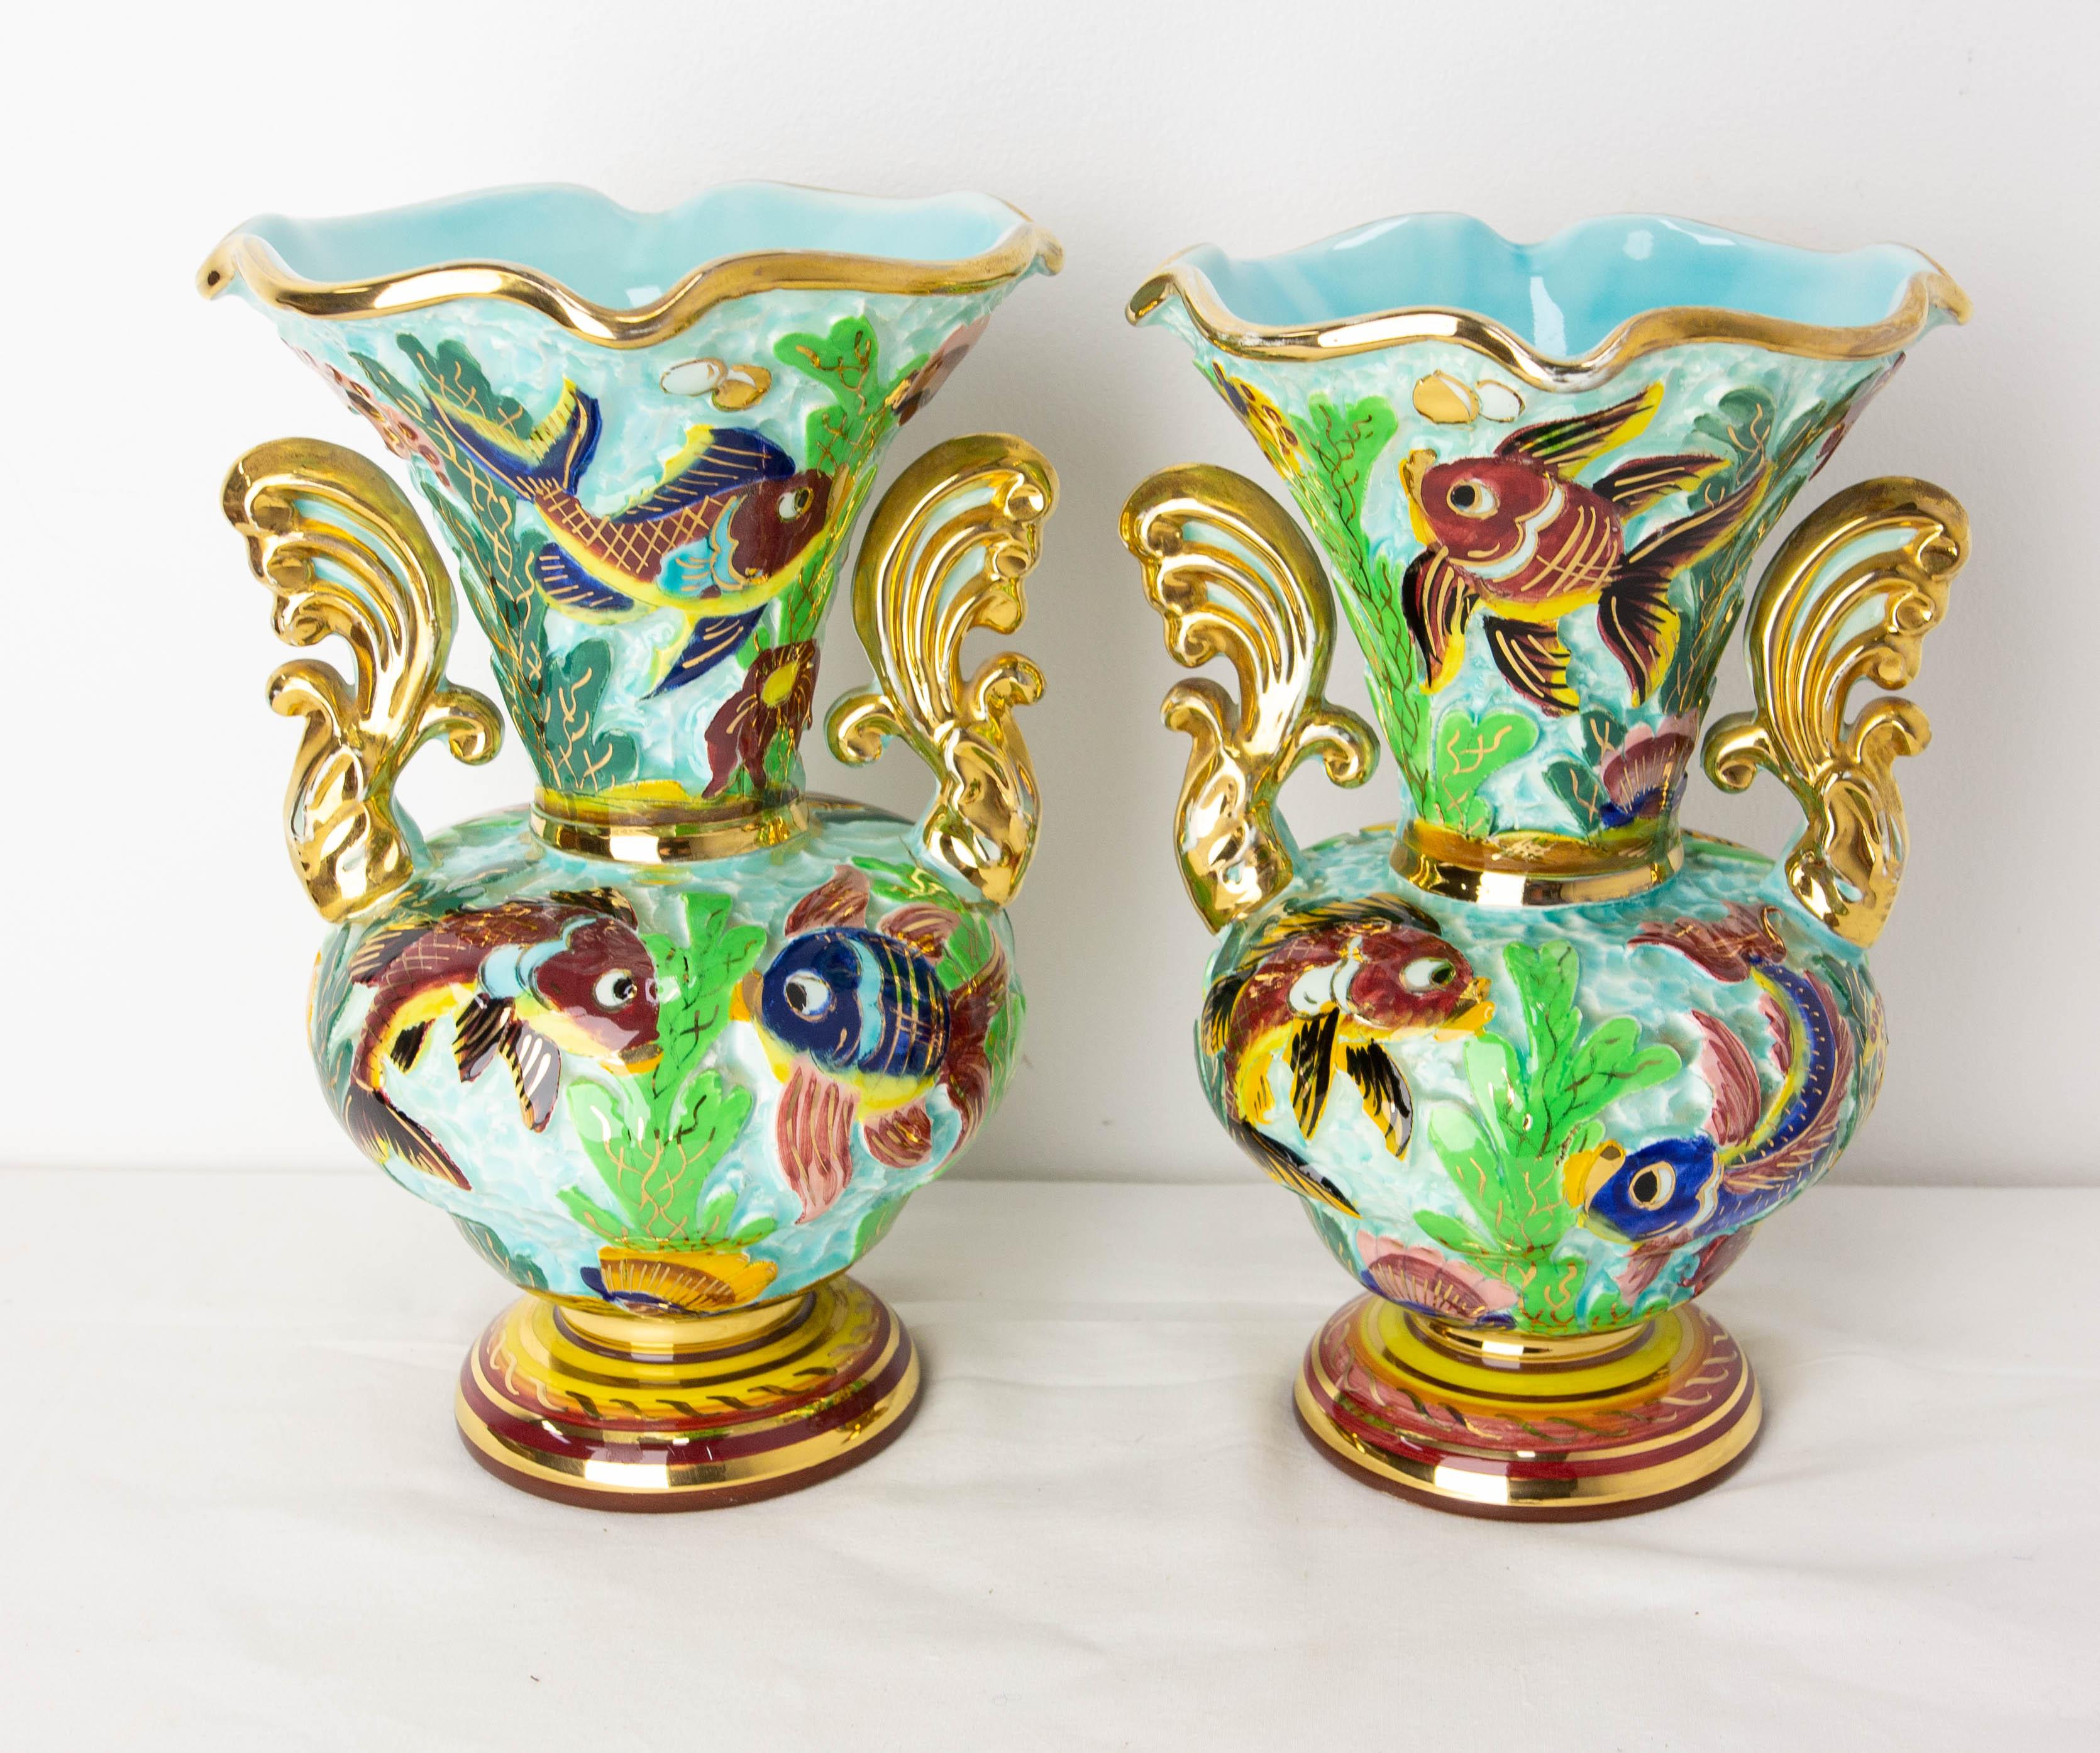 Diese Vase aus der Mitte des Jahrhunderts stellt Fische und Algen auf dem Meeresgrund dar.
Jede Vase birgt eine Vielzahl bunter Details, die in einem naiven und fröhlichen Stil gemalt sind.
Gemalt von Cerart Monaco
Guter Vintage-Zustand.

Maße: 16 /